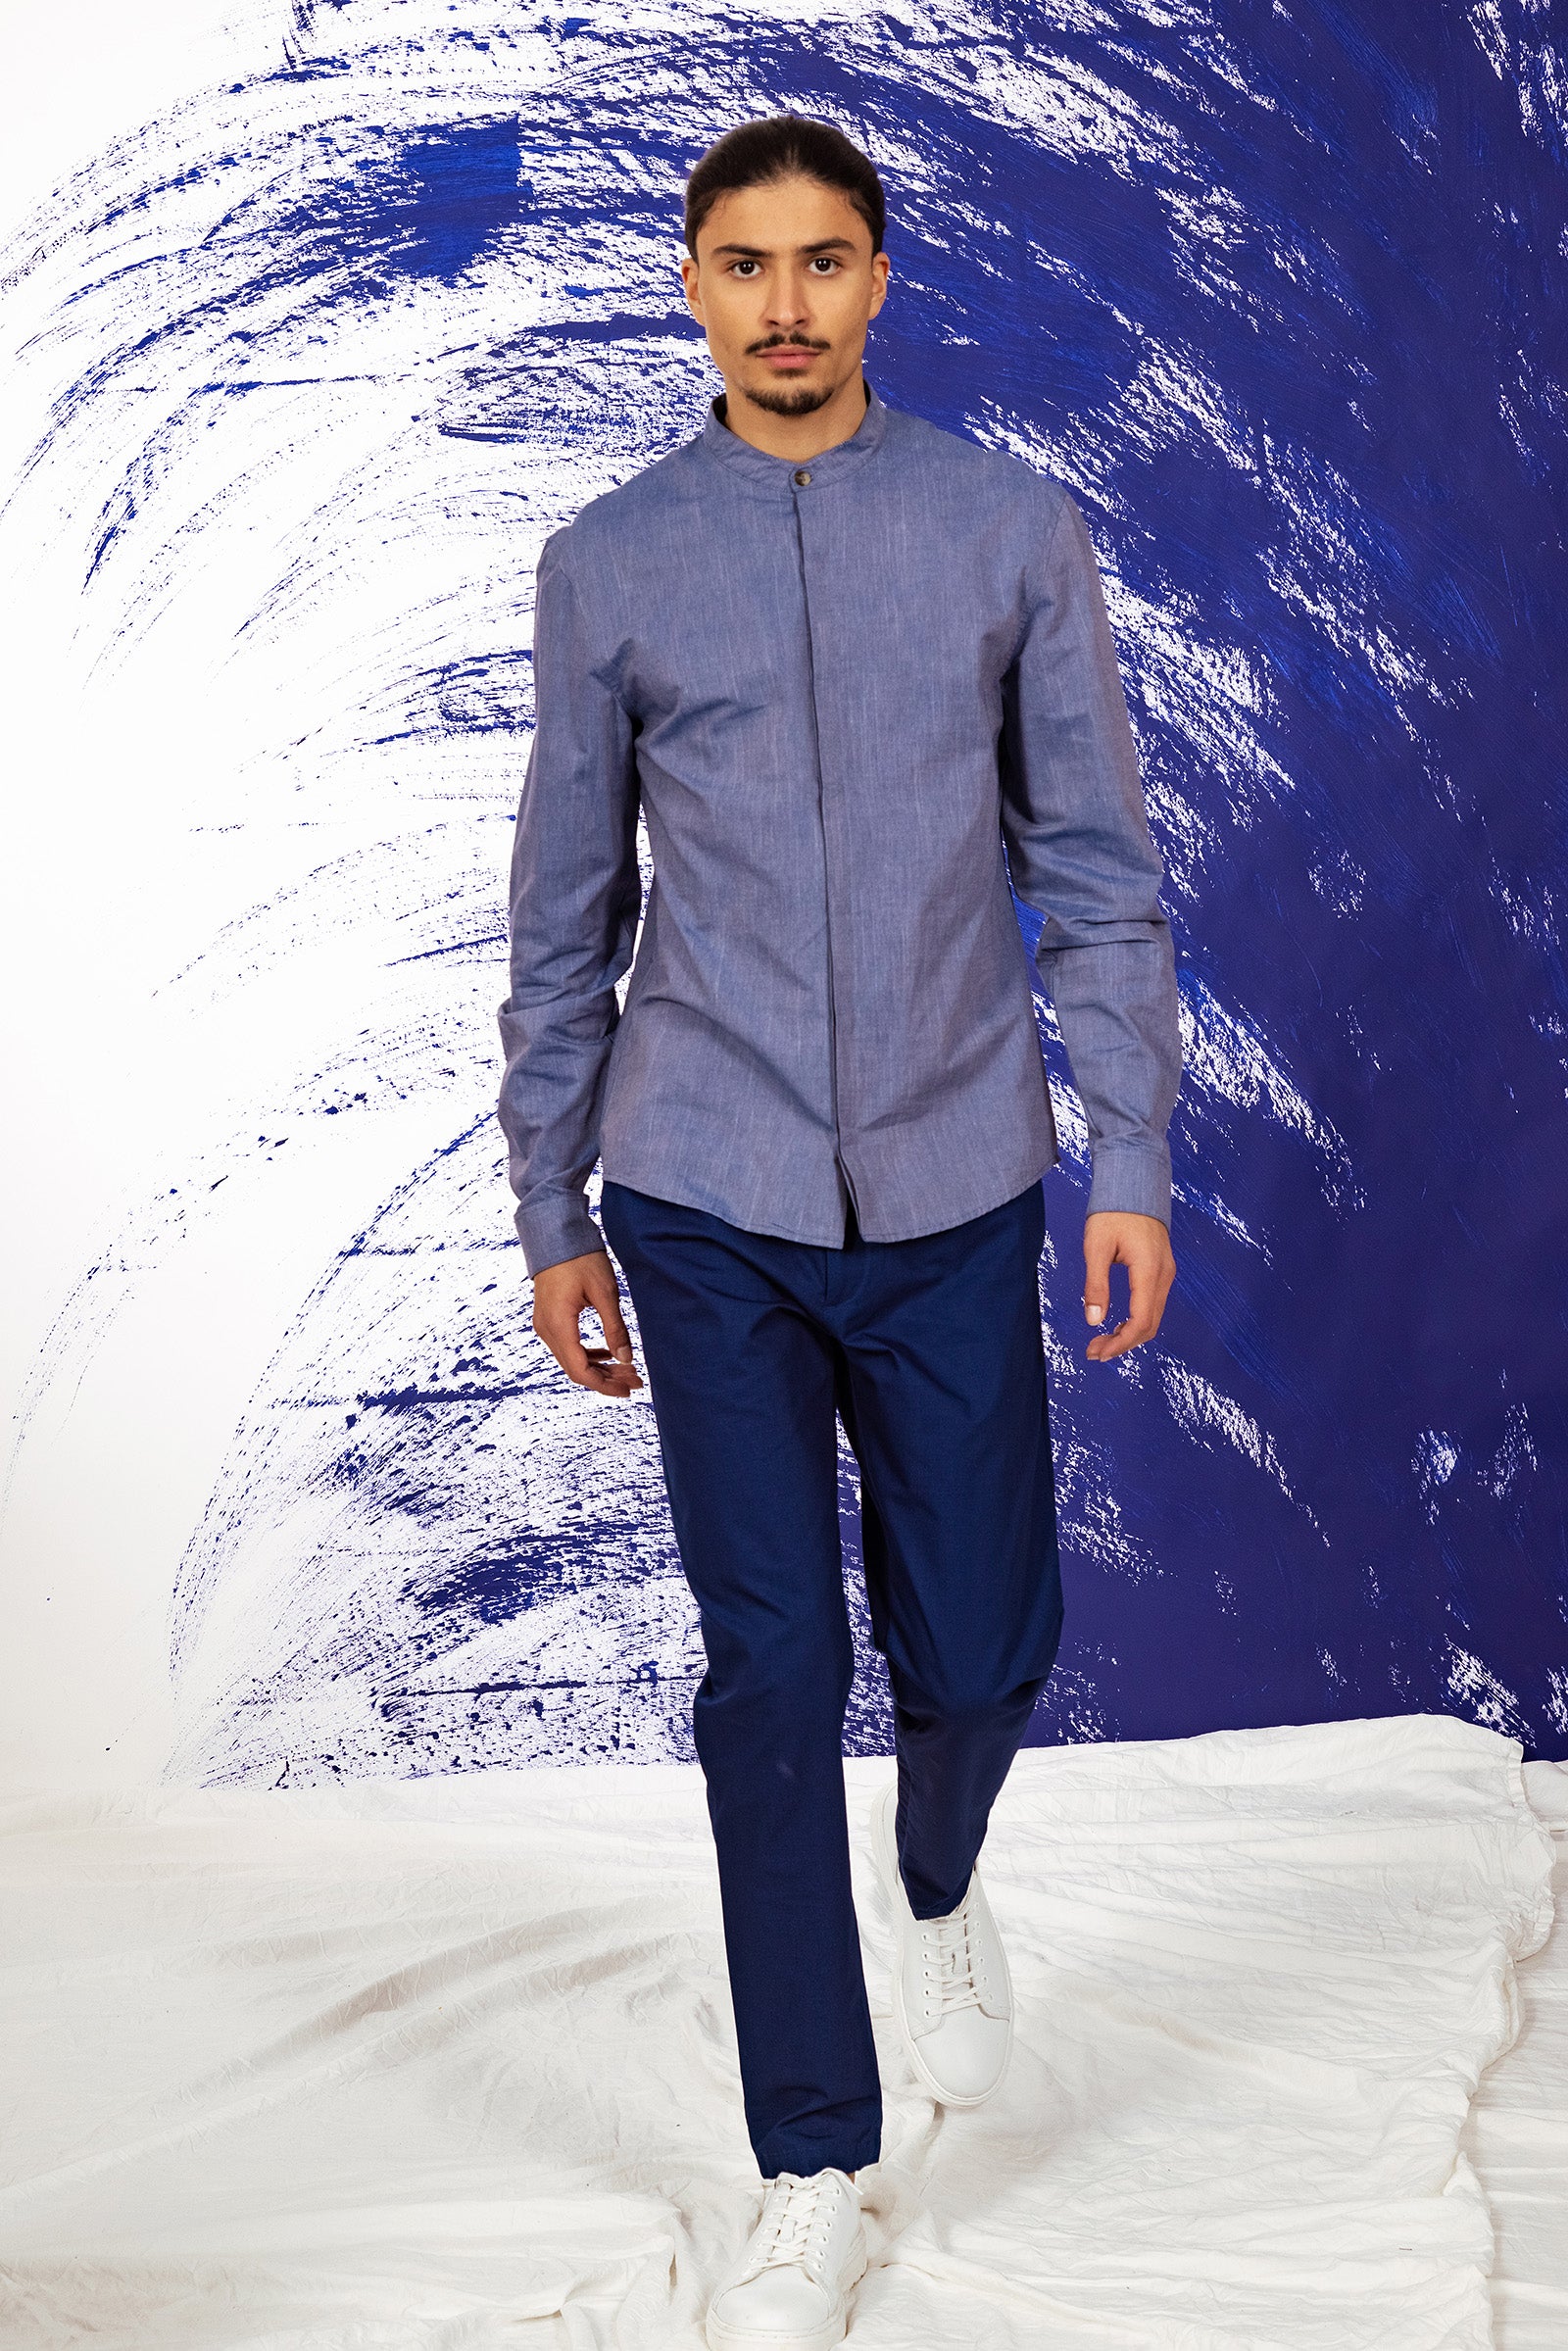 chemise homme academia bleu acier col mao coupe droite été légèreté design style élégance fond bleu misericordia lima pérou